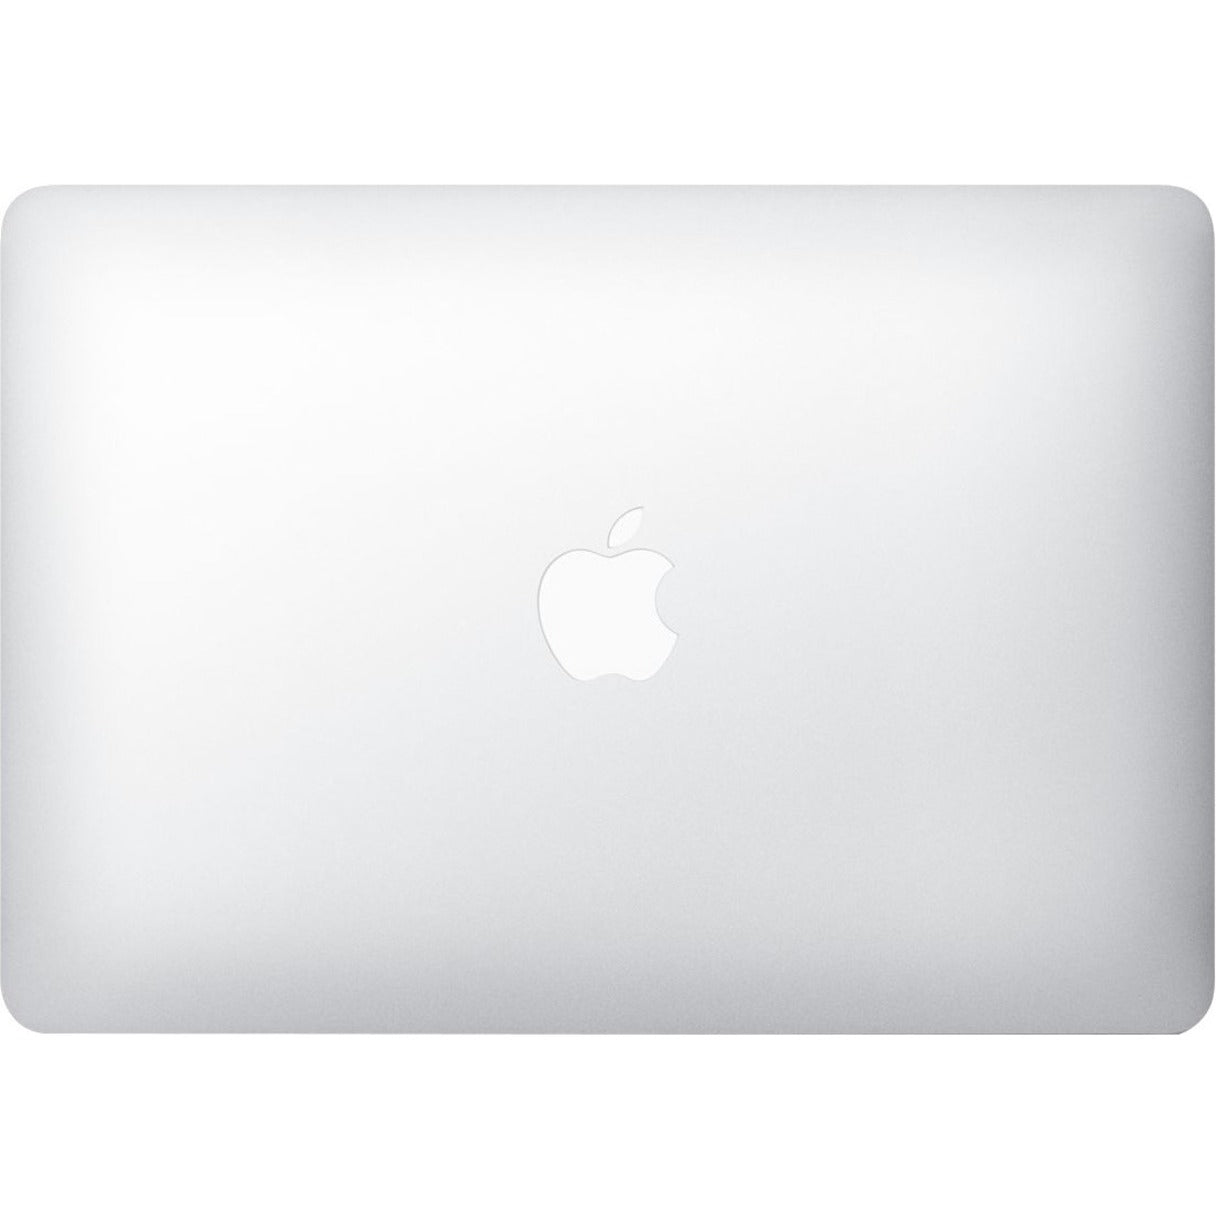 Apple MQD32LL/A MacBook Air 13.3, 8GB RAM, 128GB SSD, Mac OS Sierra